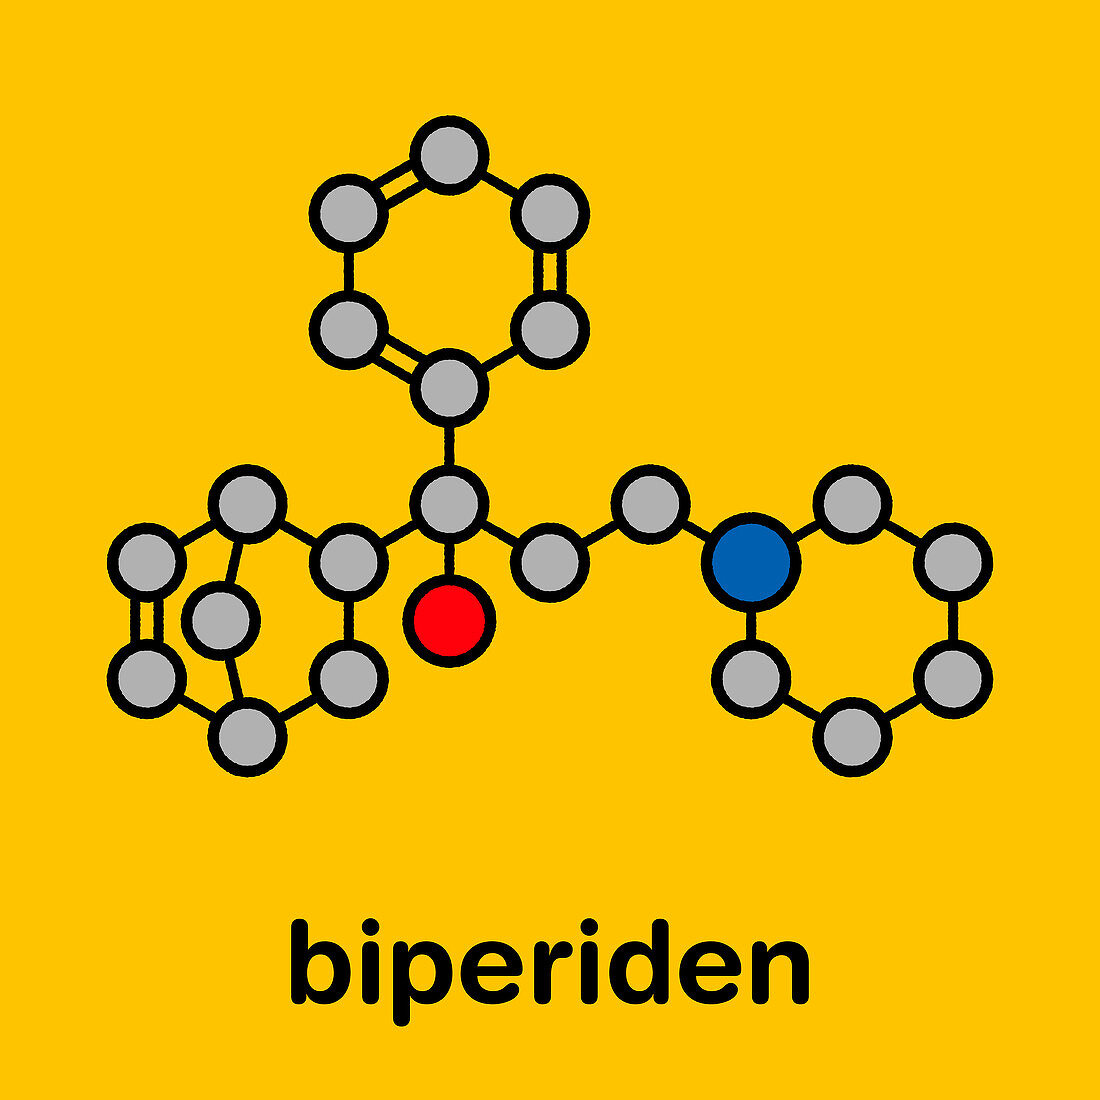 Biperiden Parkinson's disease drug, molecular model